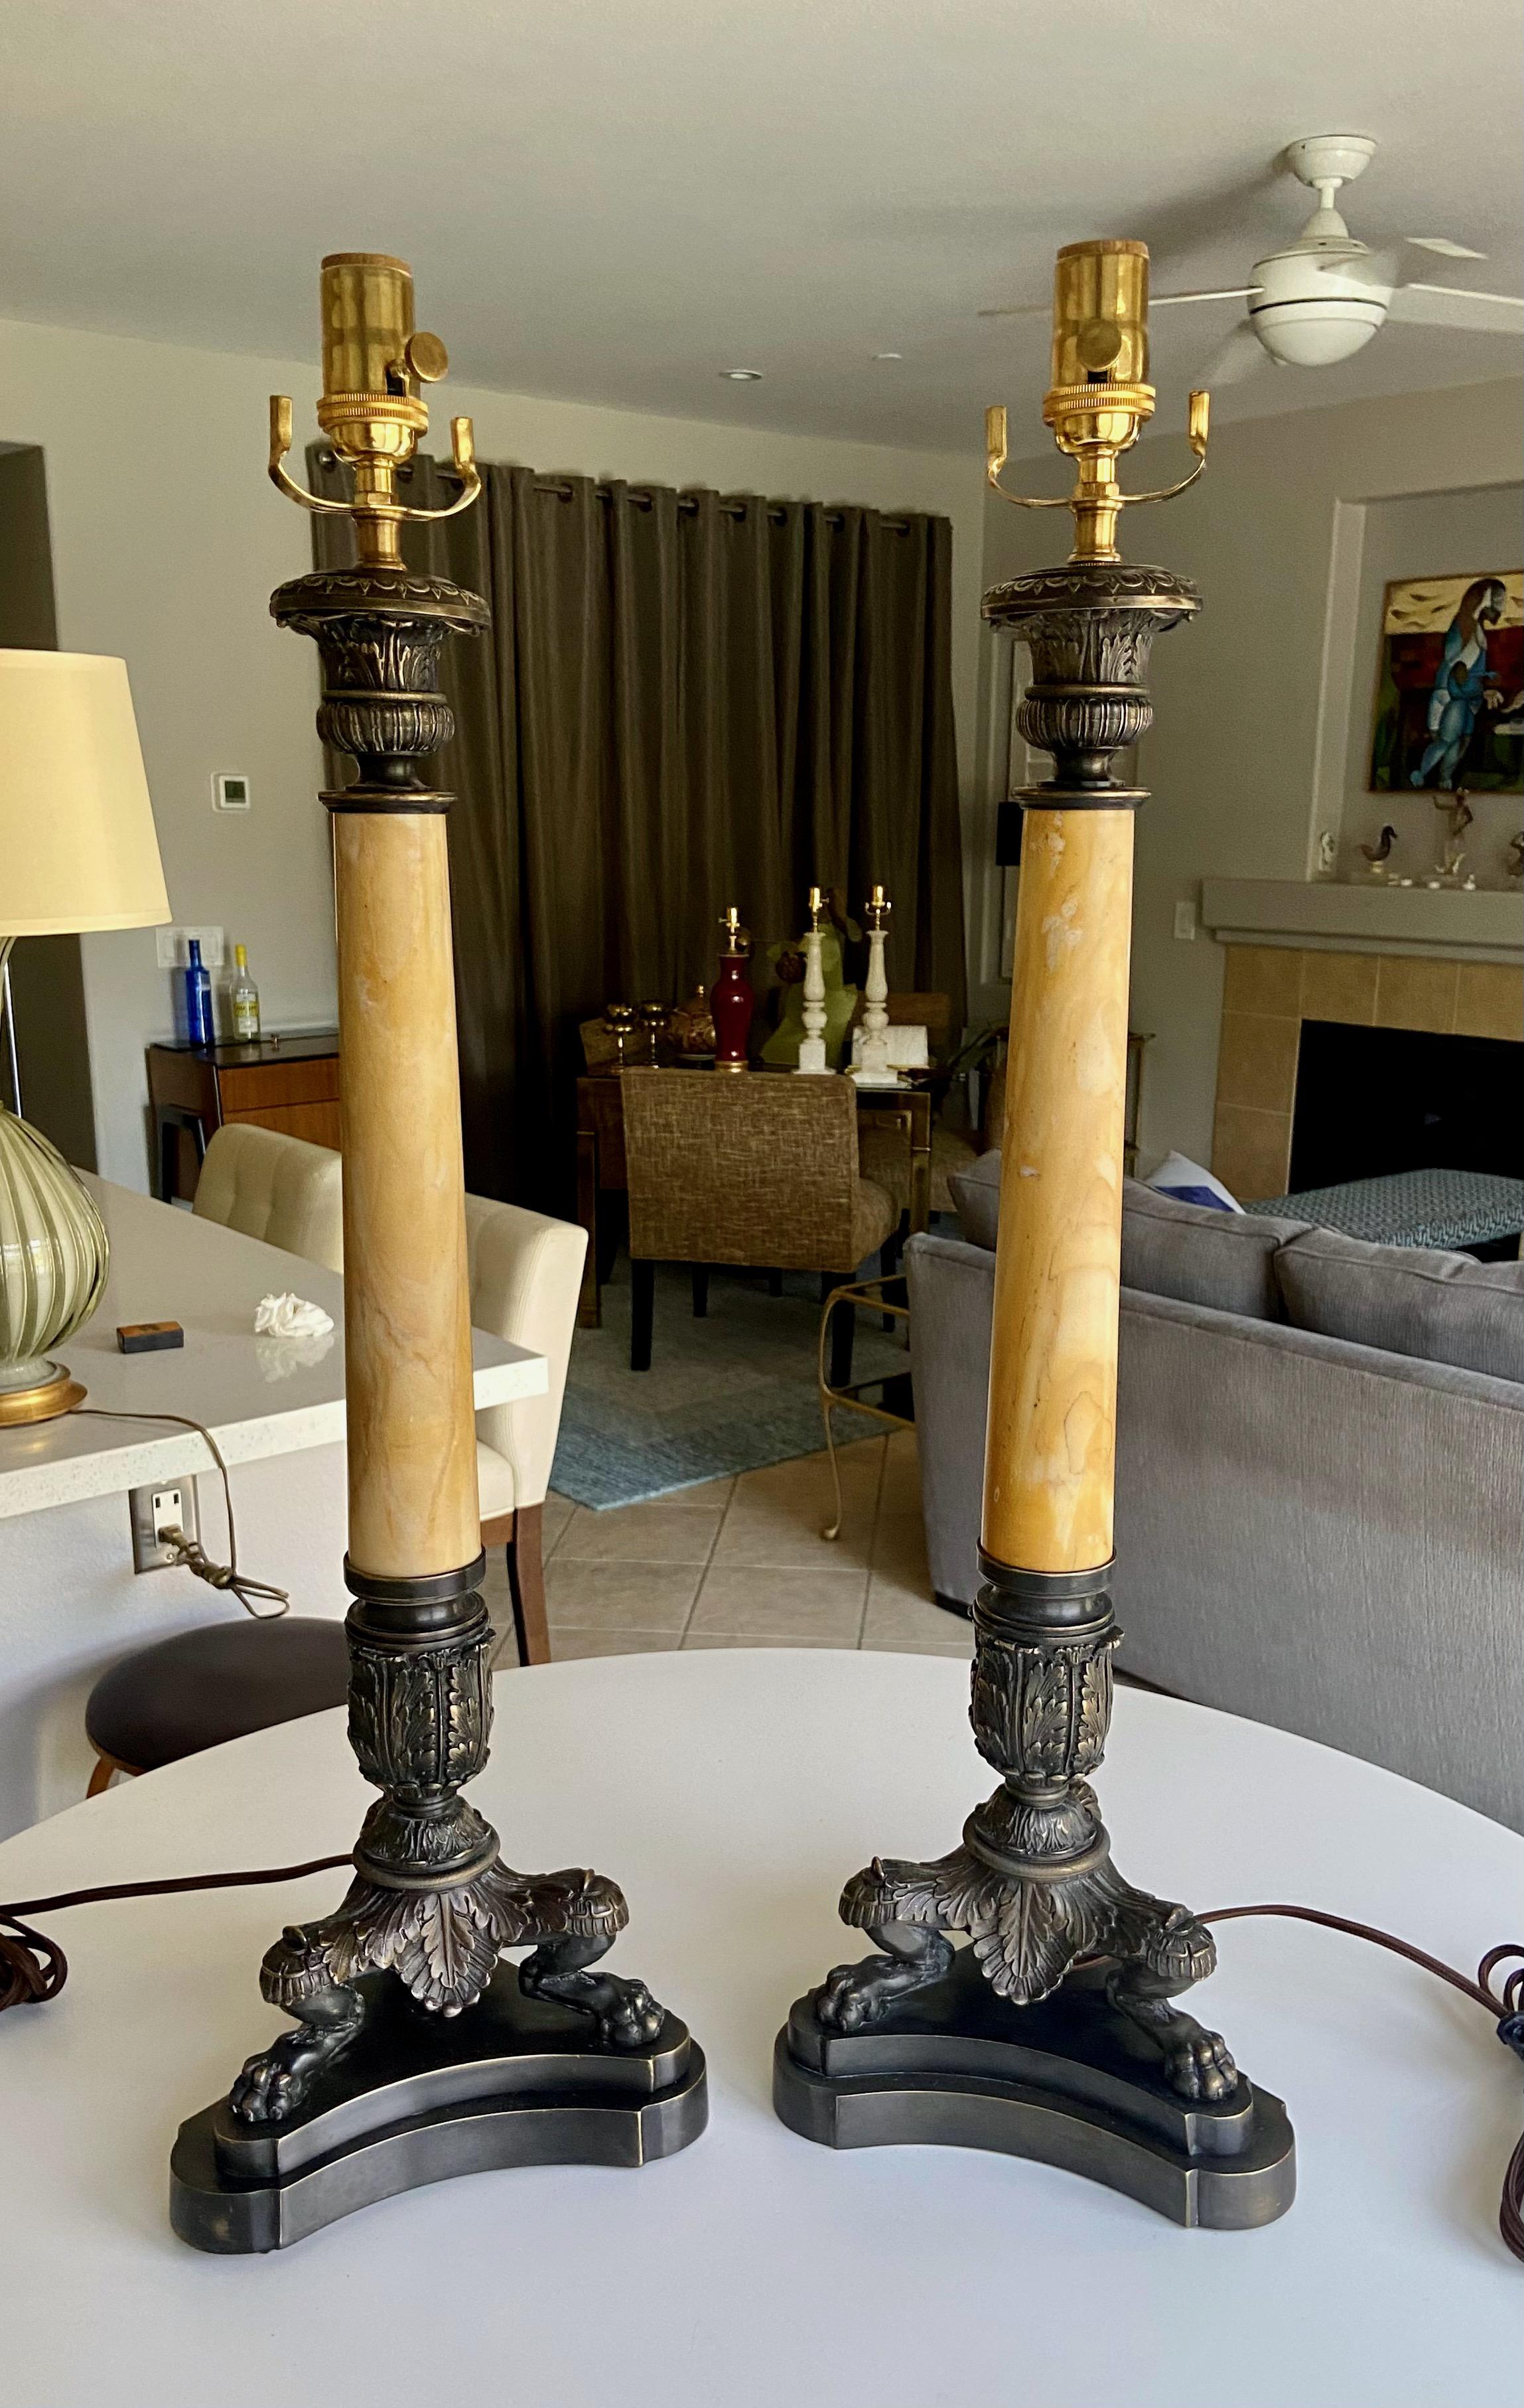 Zwei große Bronzetischlampen im französischen Empire-Stil mit Alabastersäulen auf Löwentatzenfüßen. Die Farbe des Steins ist blass bernsteinfarben mit vielen Farbvariationen und Äderungen. Die Bronze ist fachmännisch gegossen und mit feinen Details